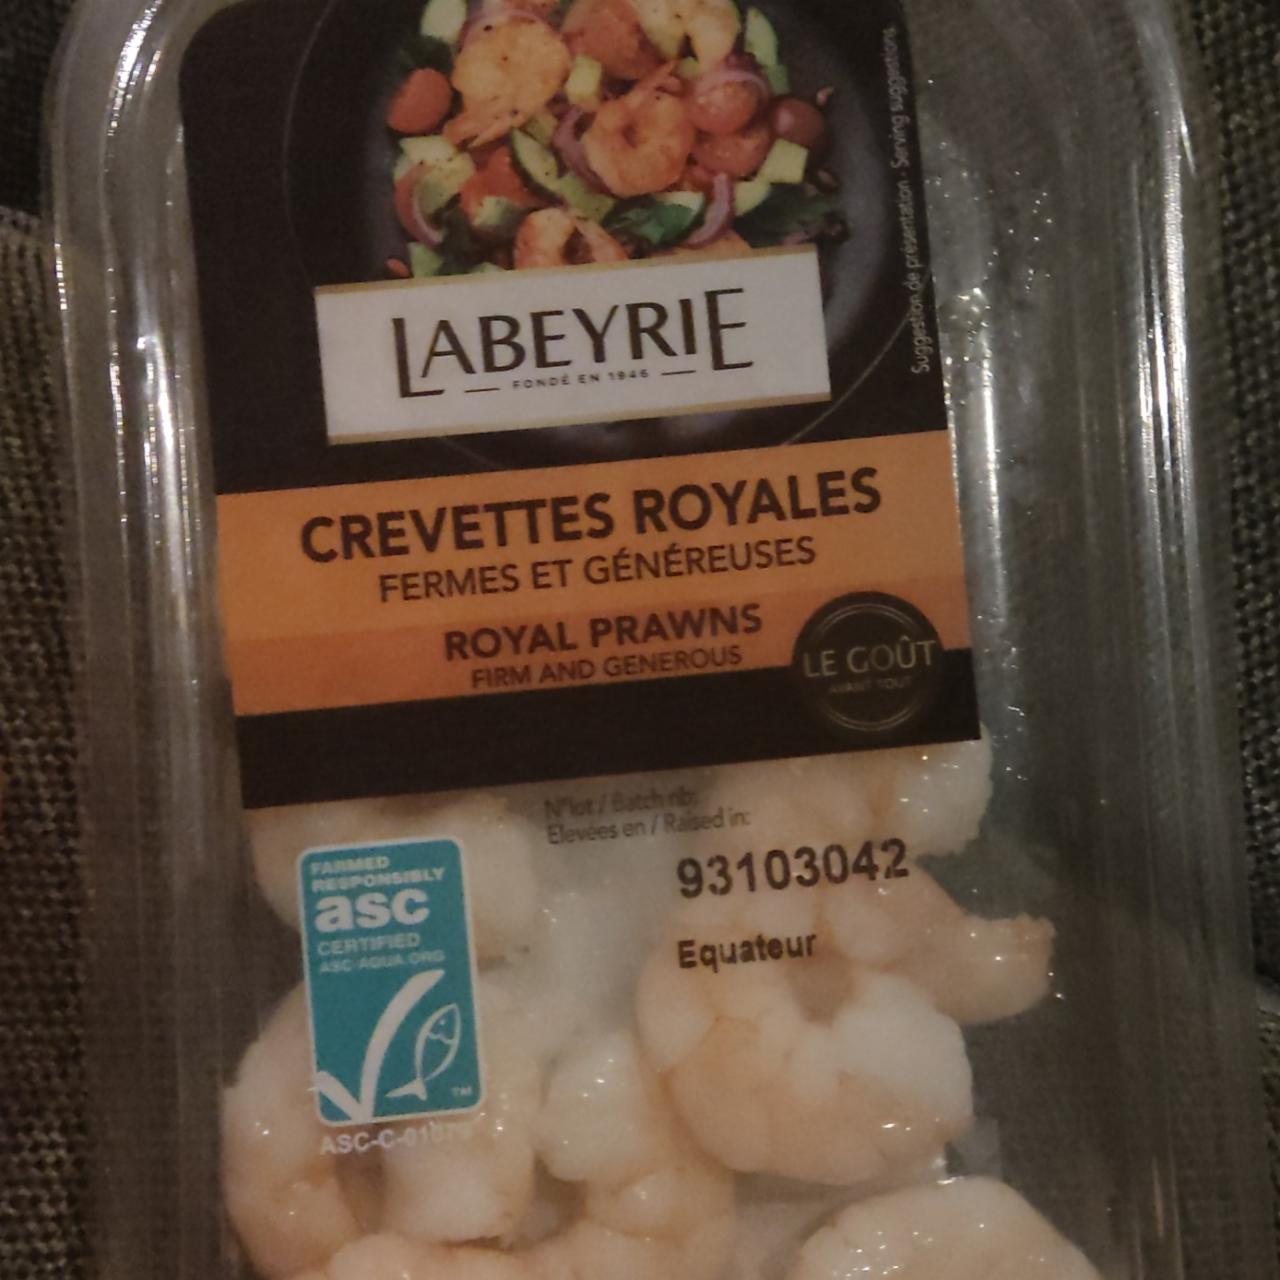 Fotografie - Crevettes royales fermes et généreuses Labeyrie